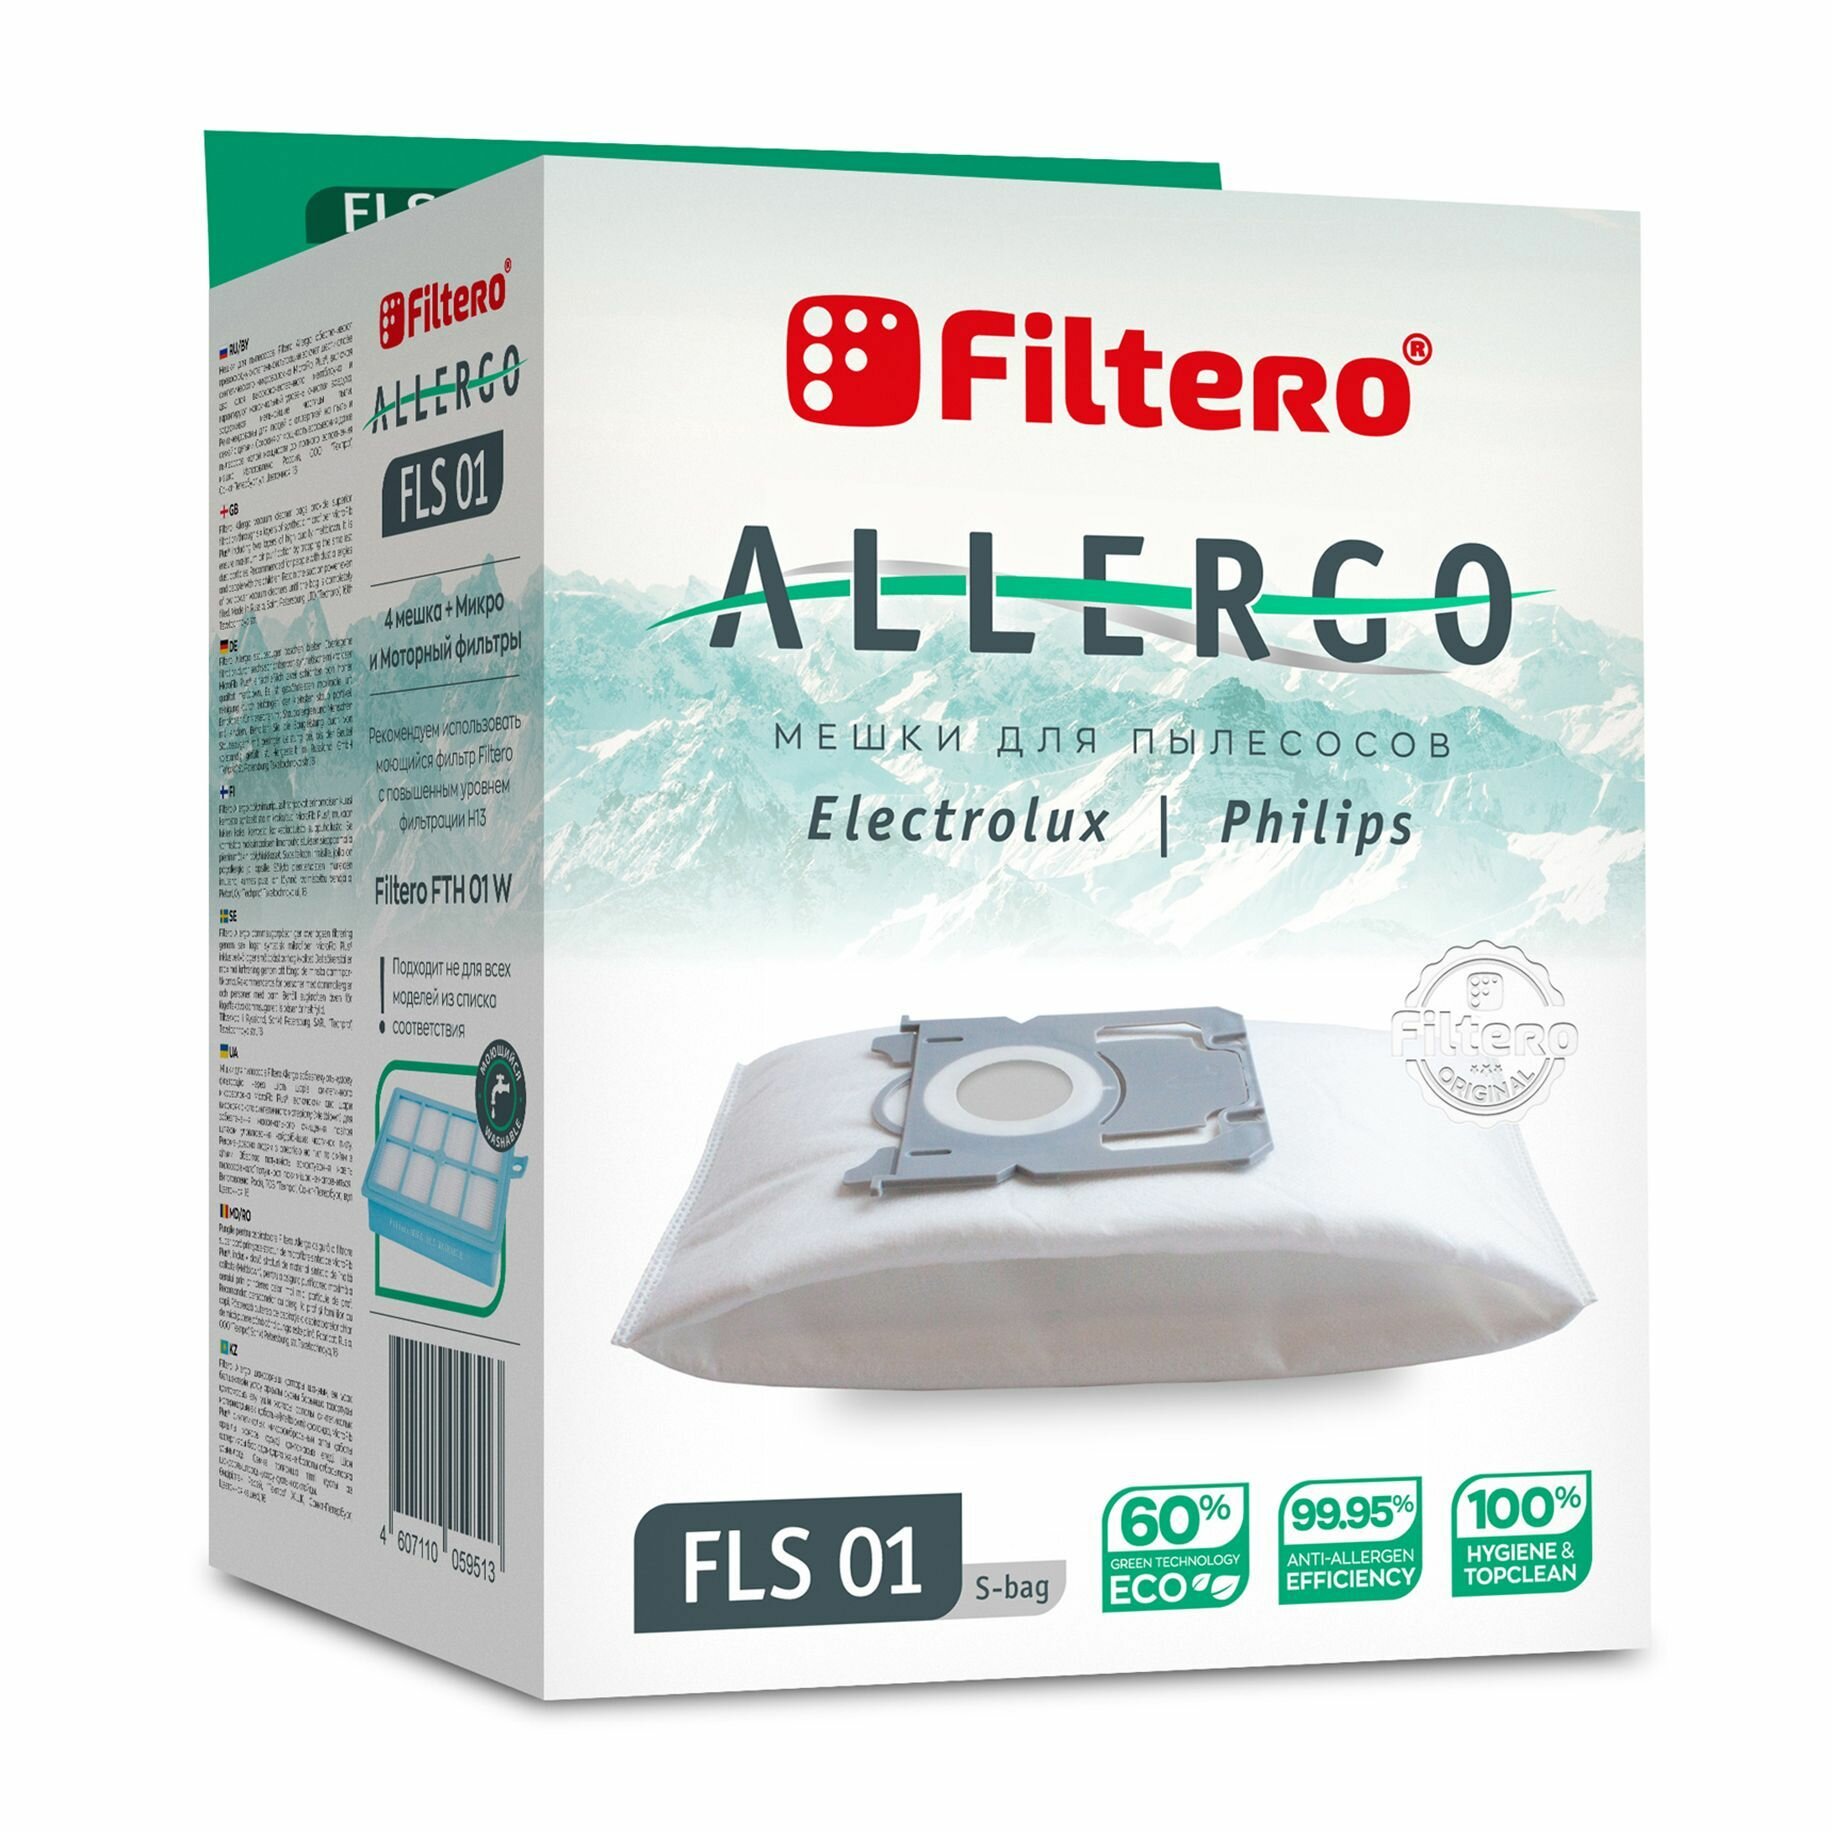 Мешки-пылесборники Filtero FLS 01 (S-bag) Allergo, антиаллергенные 4 штуки, моторный и микрофильтр